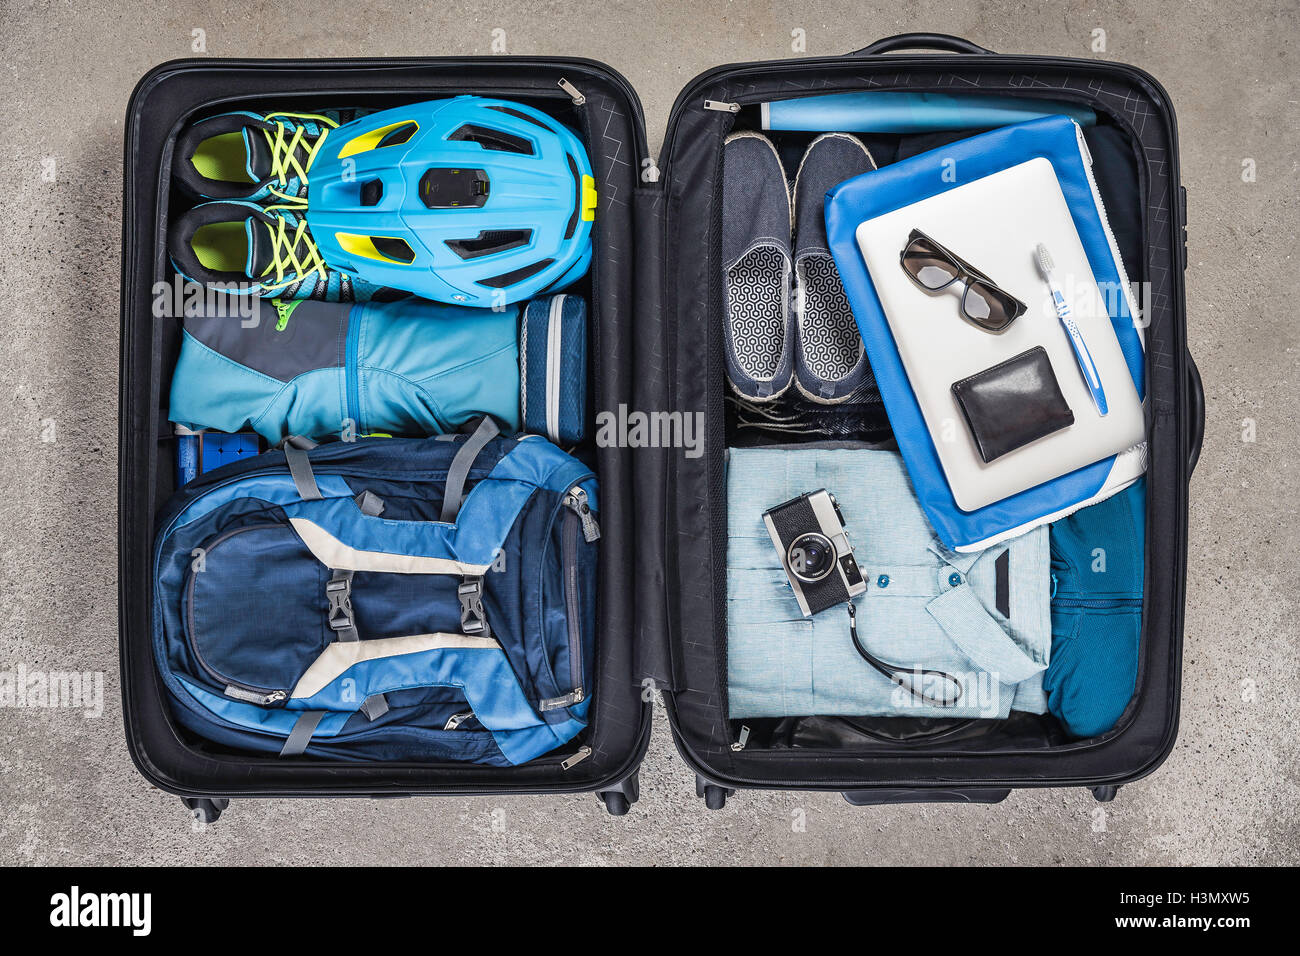 Vue de dessus de l'ouverture des paniers-valise à chemise bleue, casque, sac à dos, appareil photo rétro et brosse à dents Banque D'Images